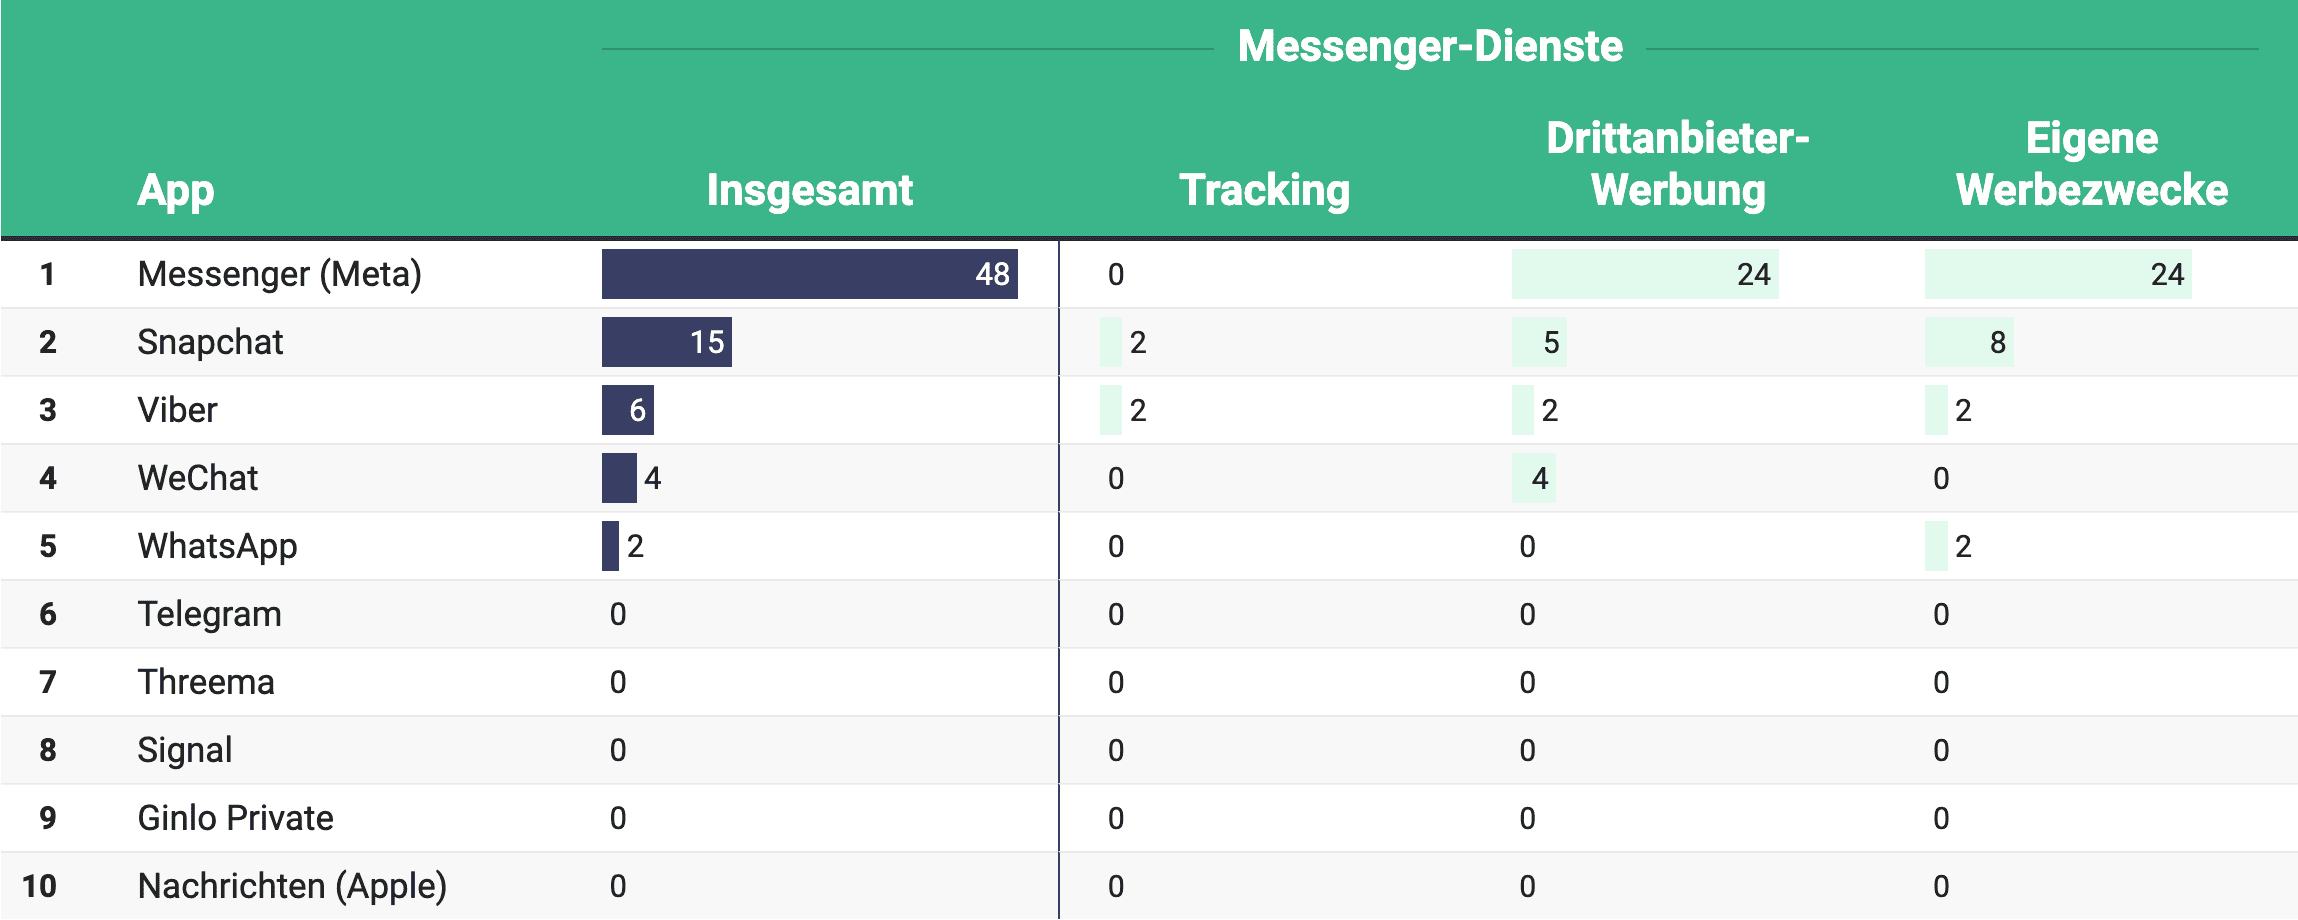 Die größten Datenkraken unter den Messenger-Diensten